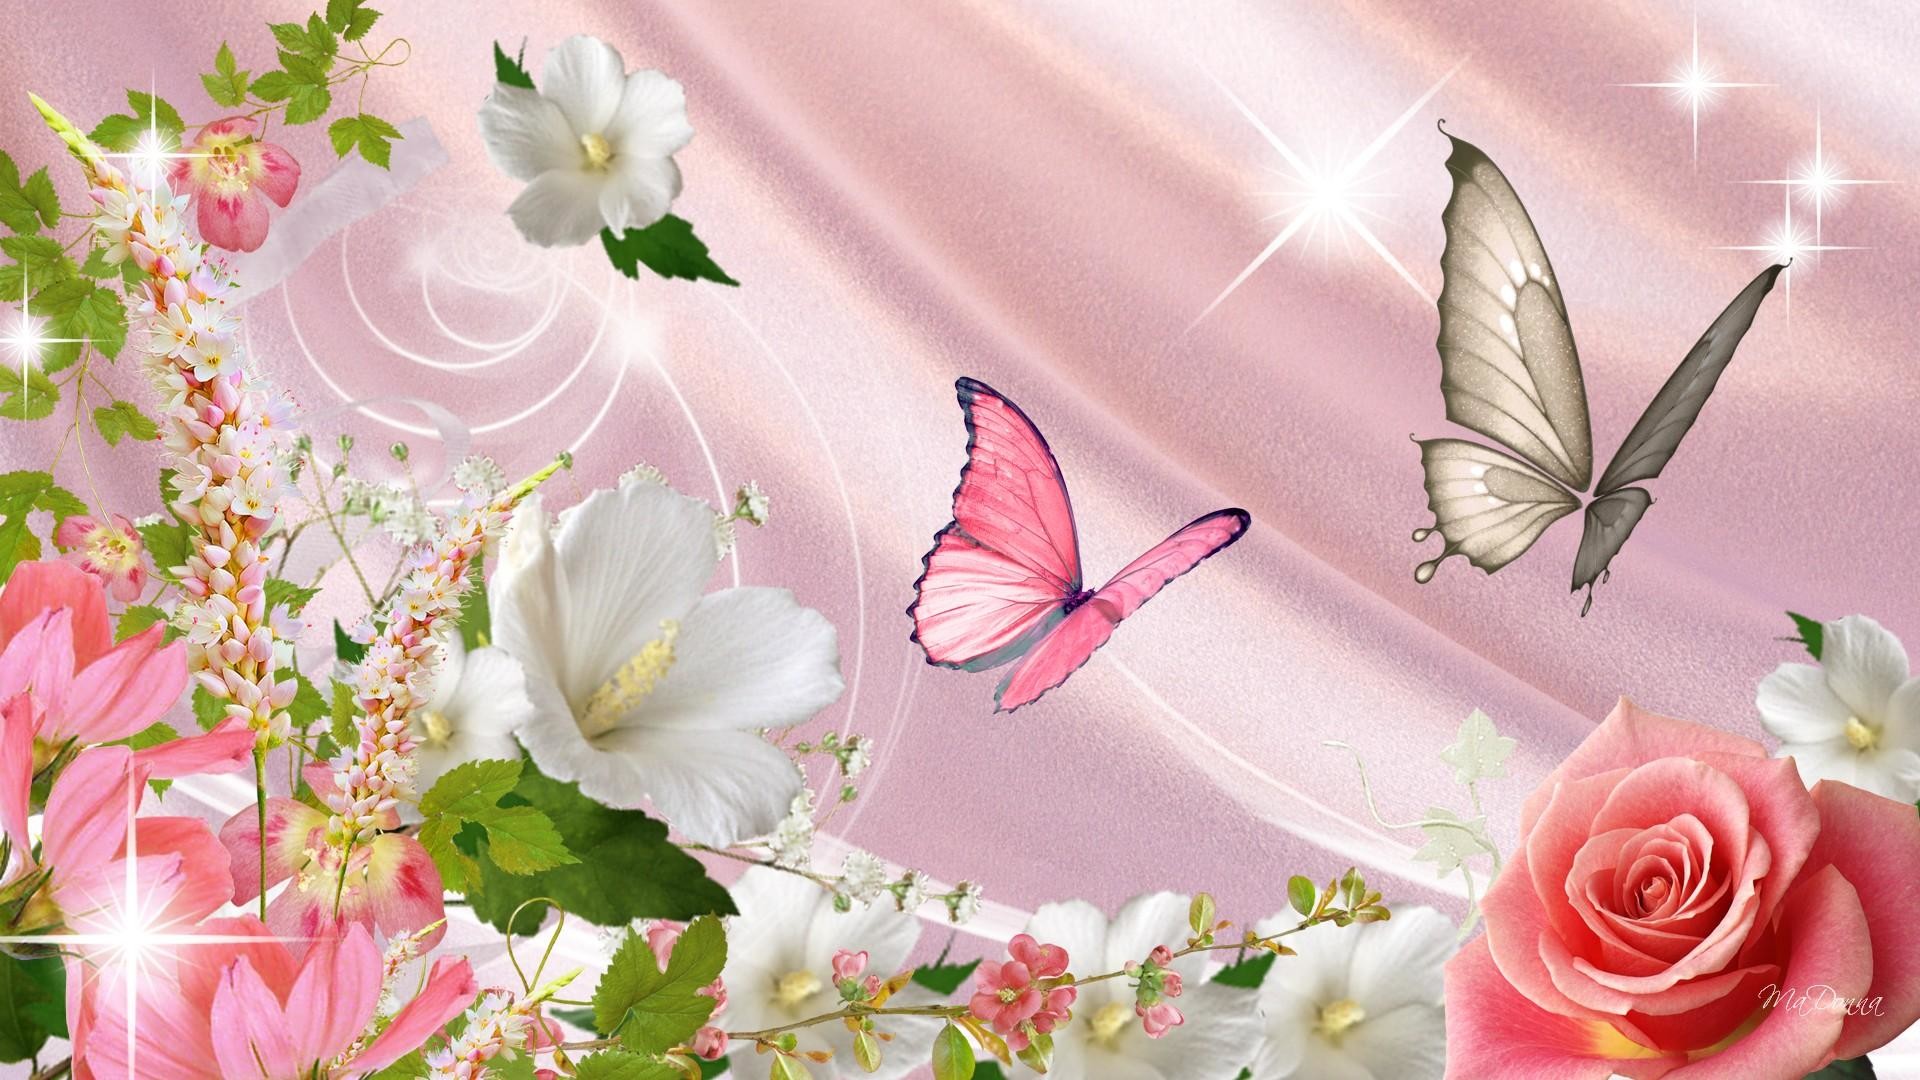 1920x1080 Wallpaper Butterflies and Flowers - WallpaperSafari